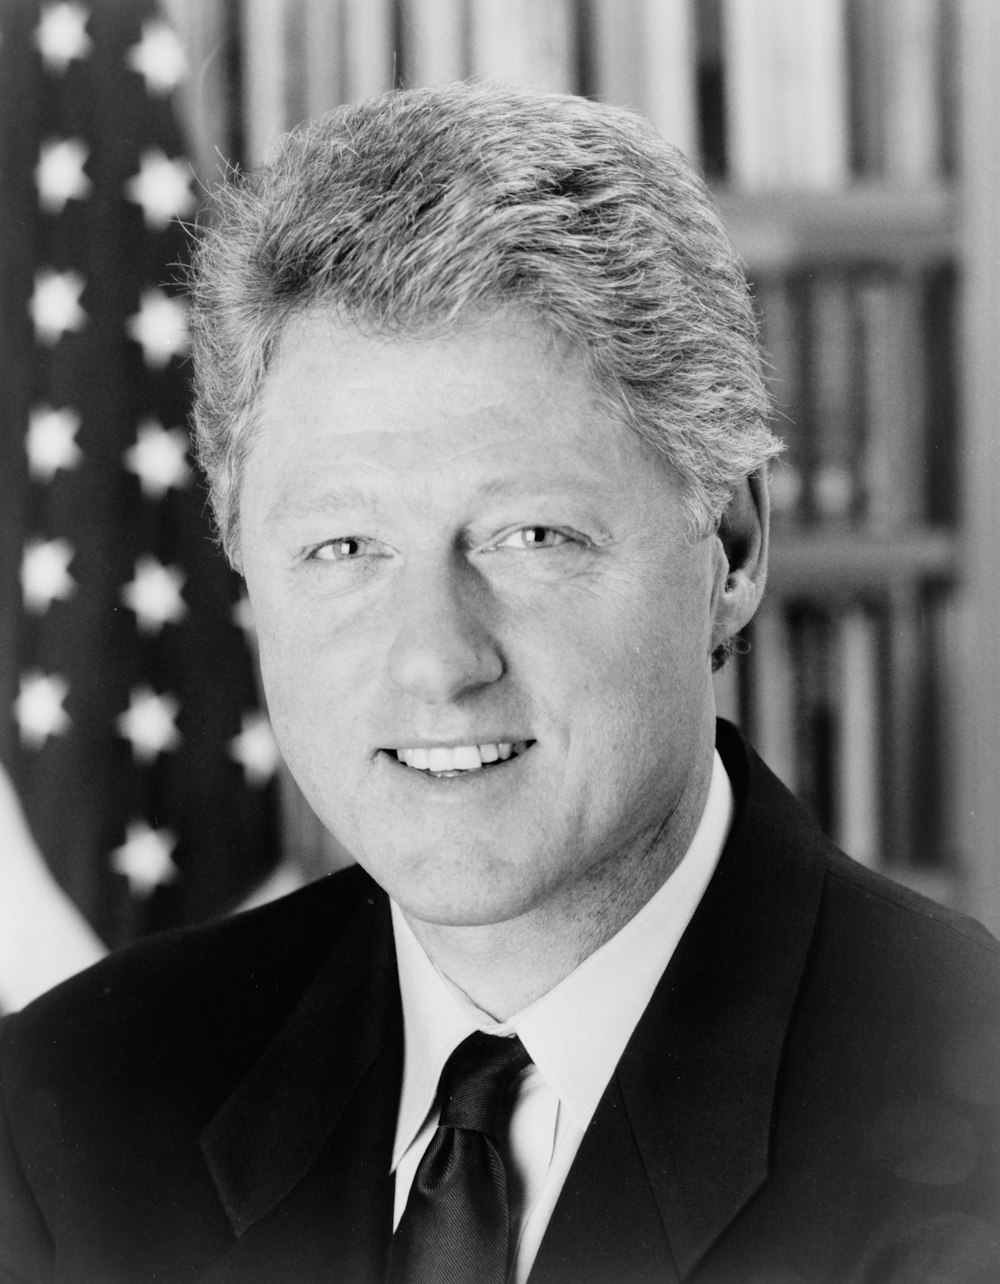 Präsident Bill Clinton